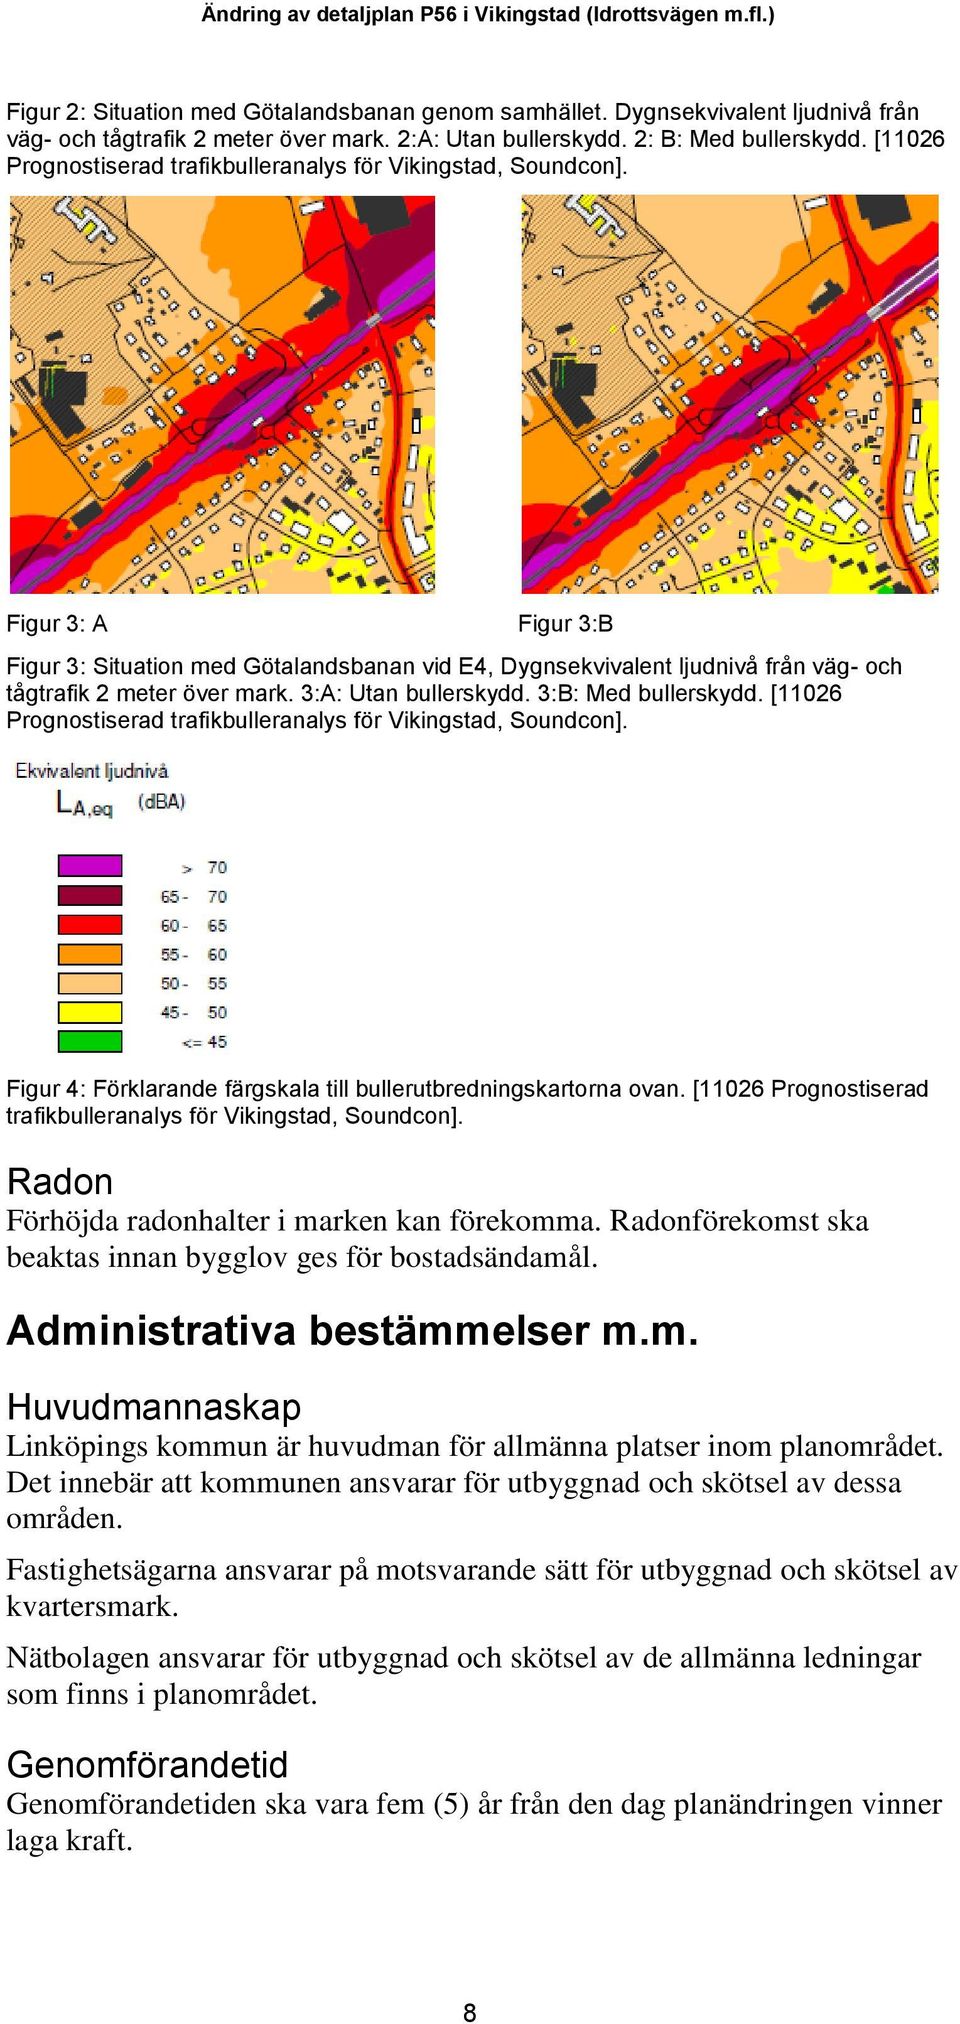 Figur 3: A Figur 3:B Figur 3: Situation med Götalandsbanan vid E4, Dygnsekvivalent ljudnivå från väg- och tågtrafik 2 meter över mark. 3:A: Utan bullerskydd. 3:B: Med bullerskydd.